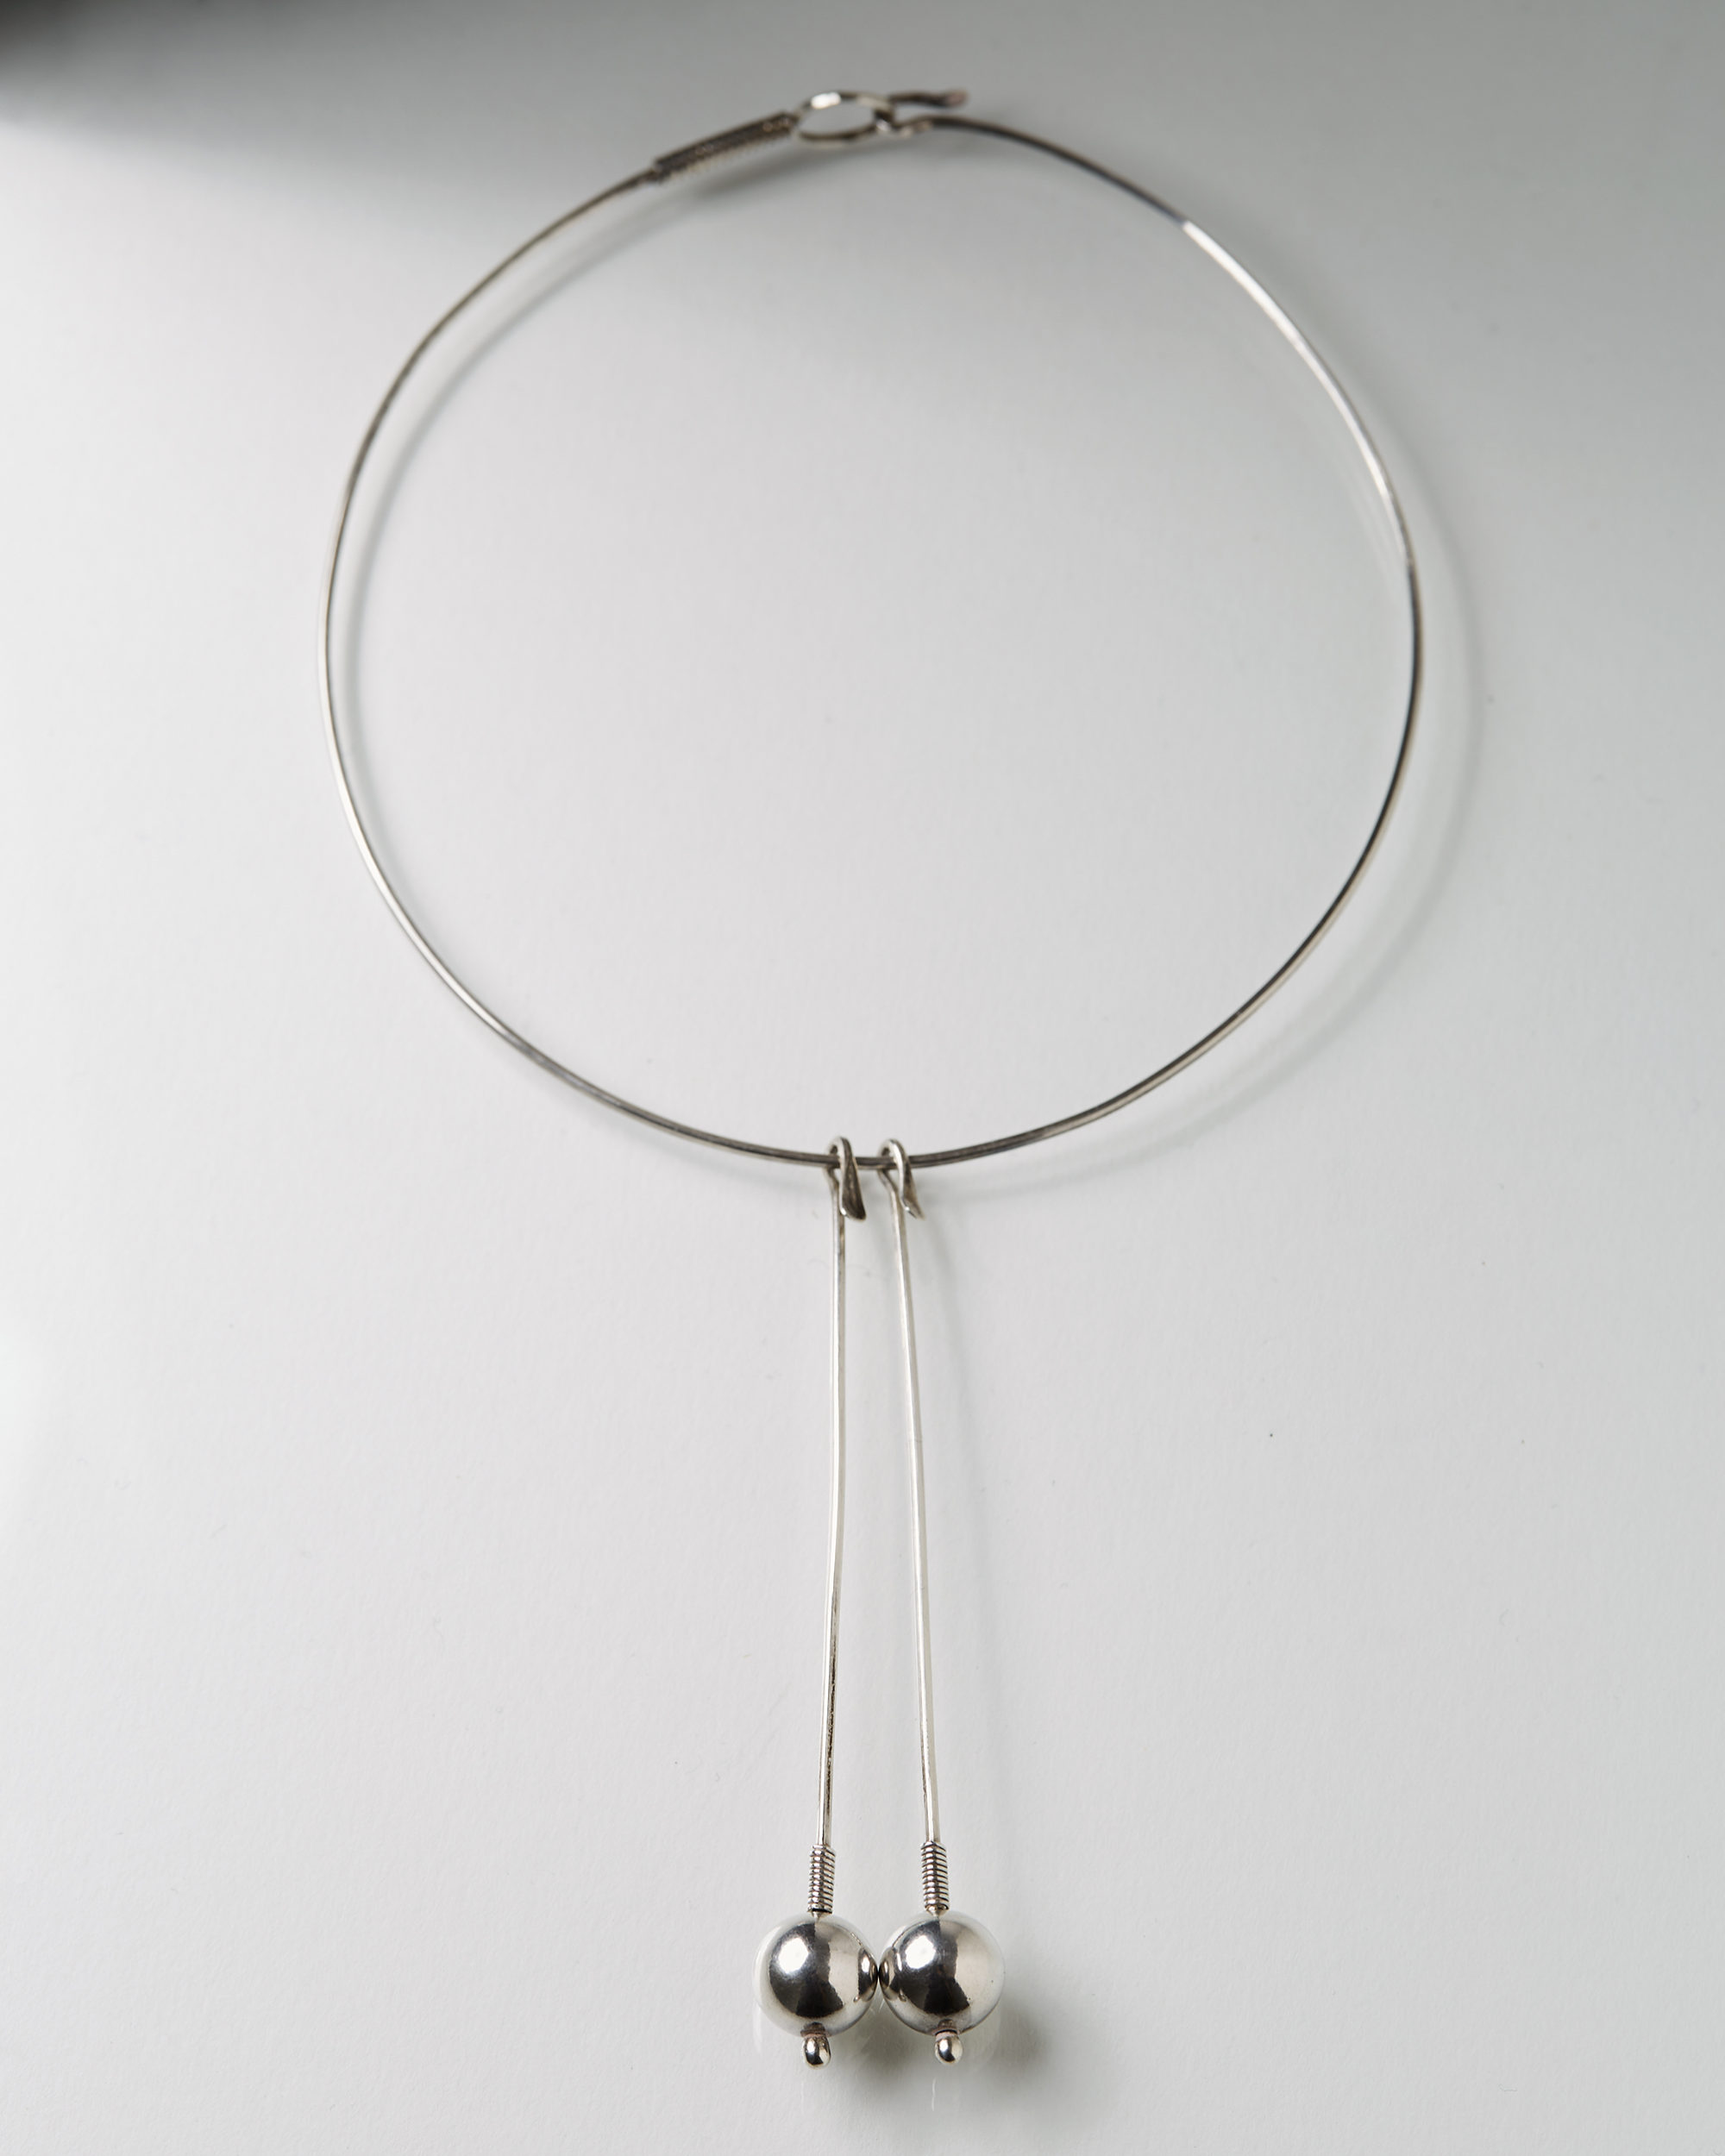 Necklace designed by Torun Bülow-Hübe, — Modernity